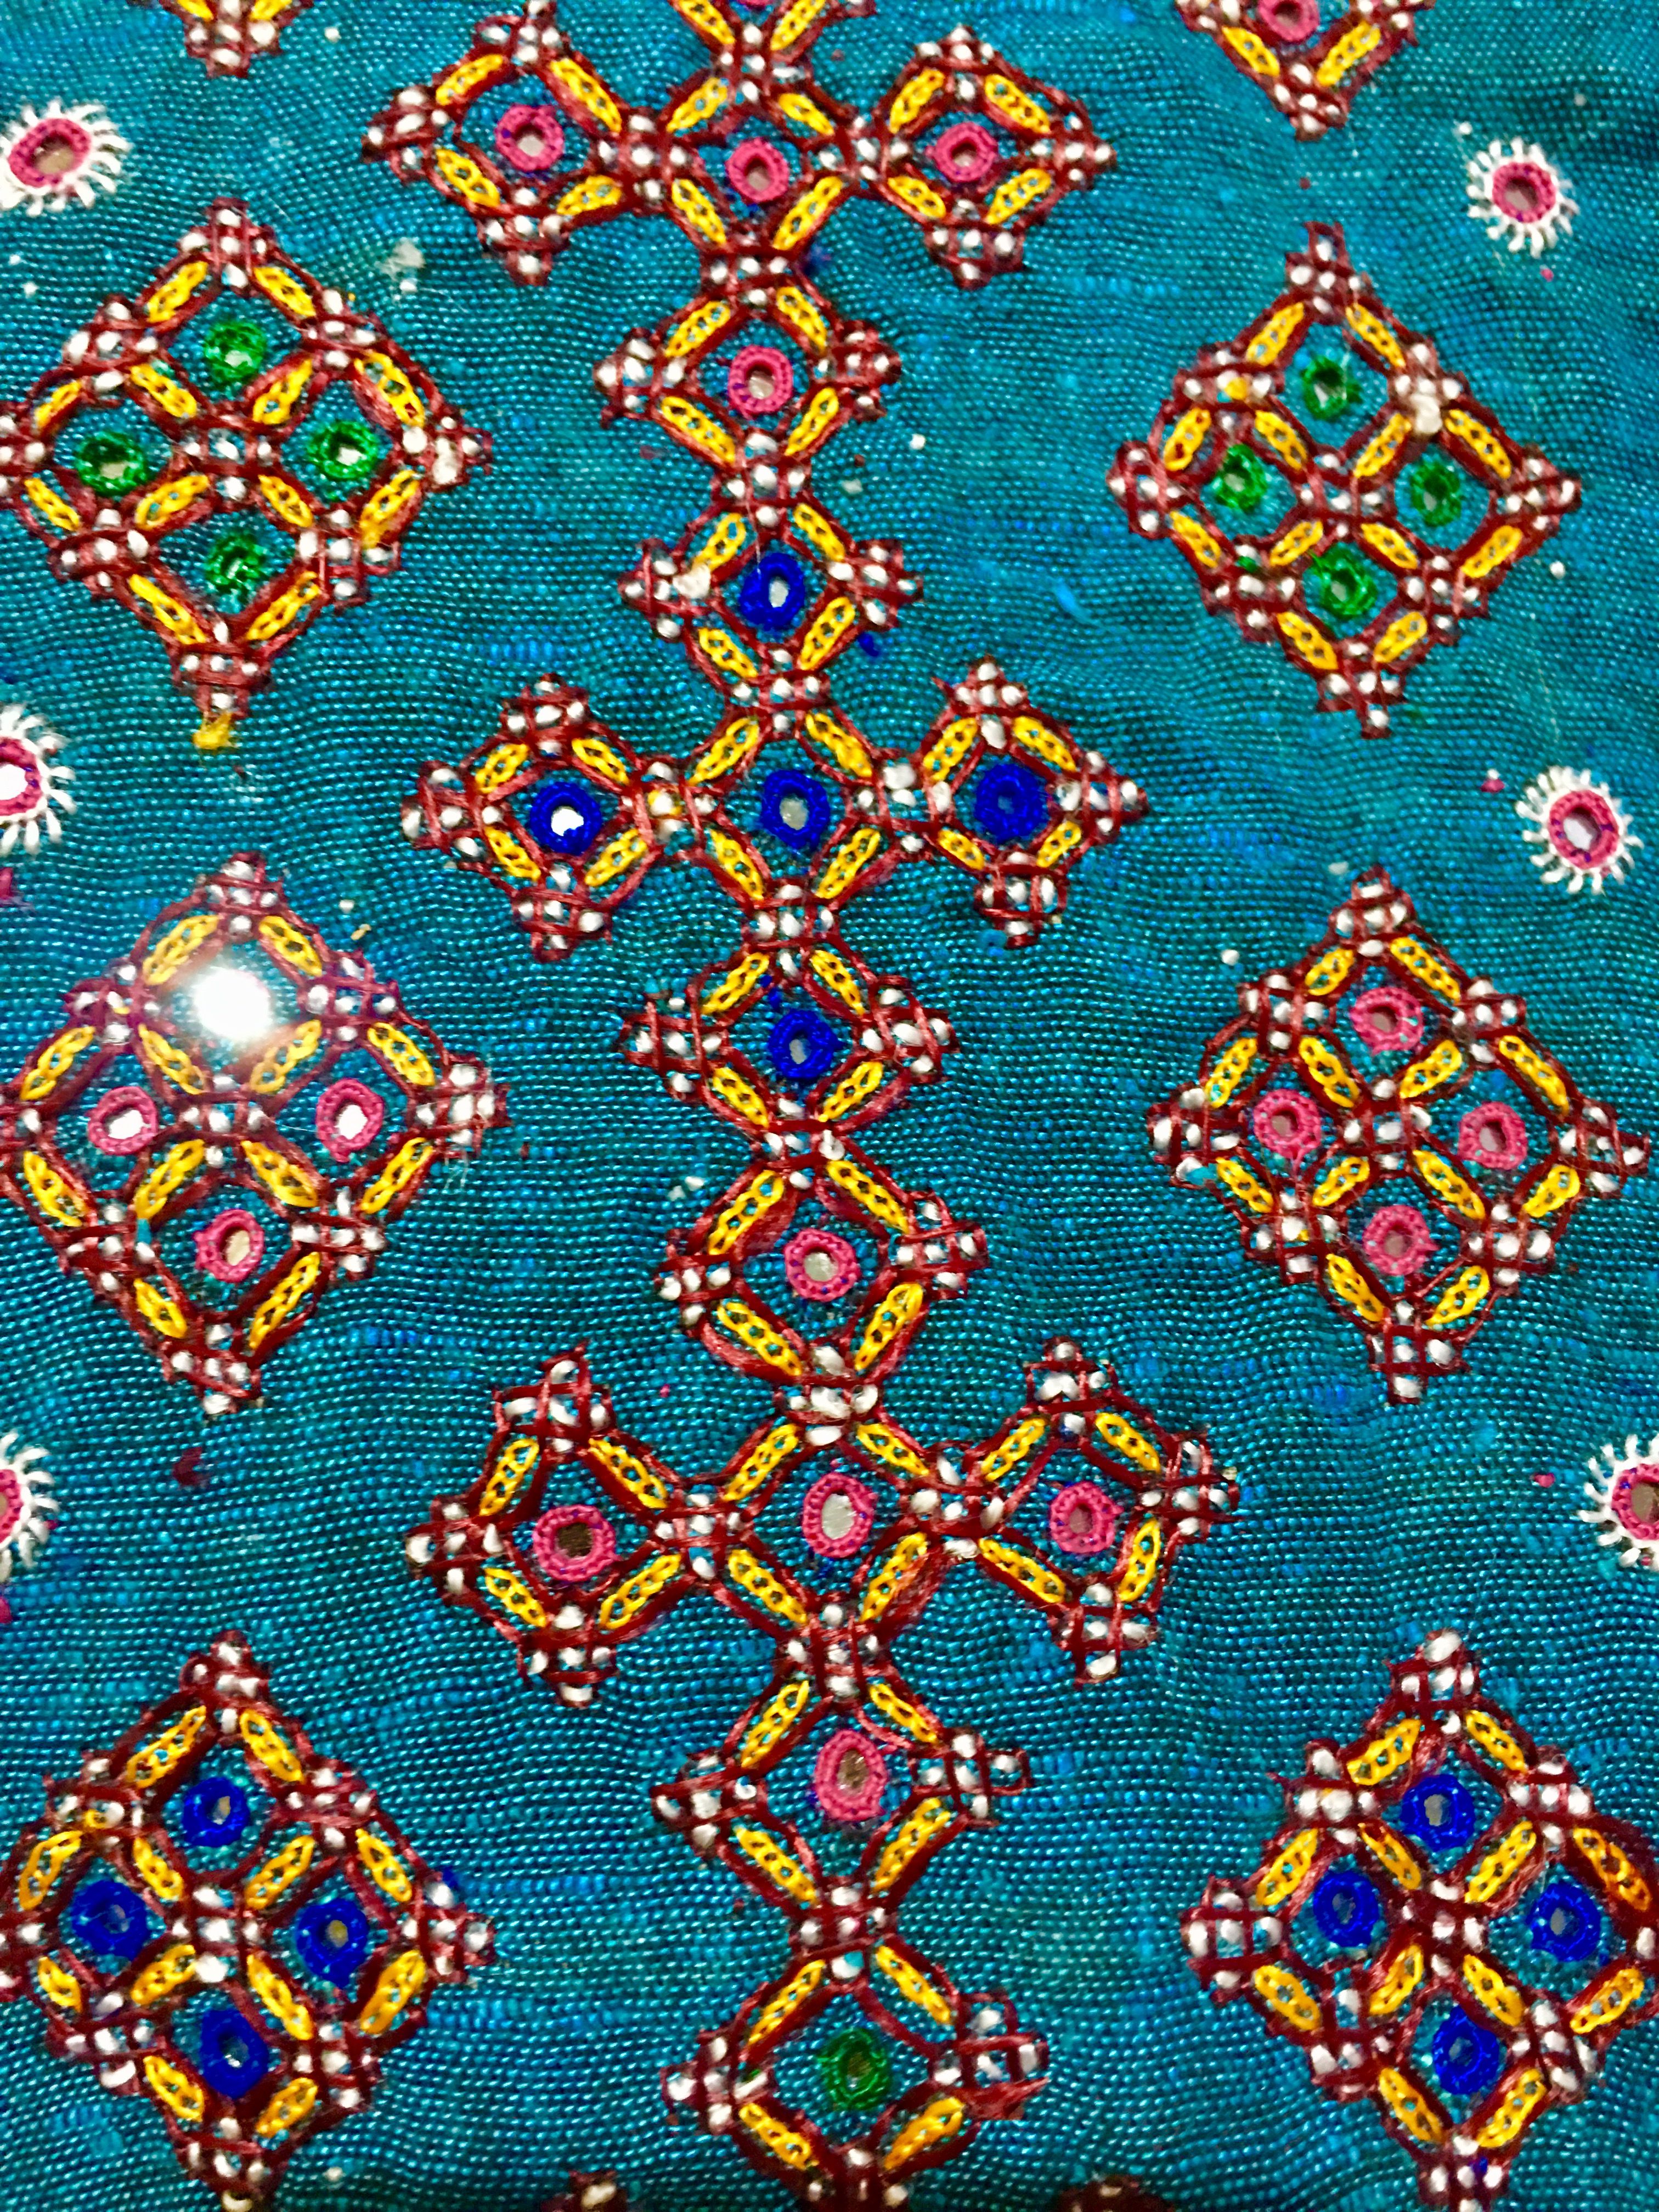 Mutwa Embroidery of Gujarat